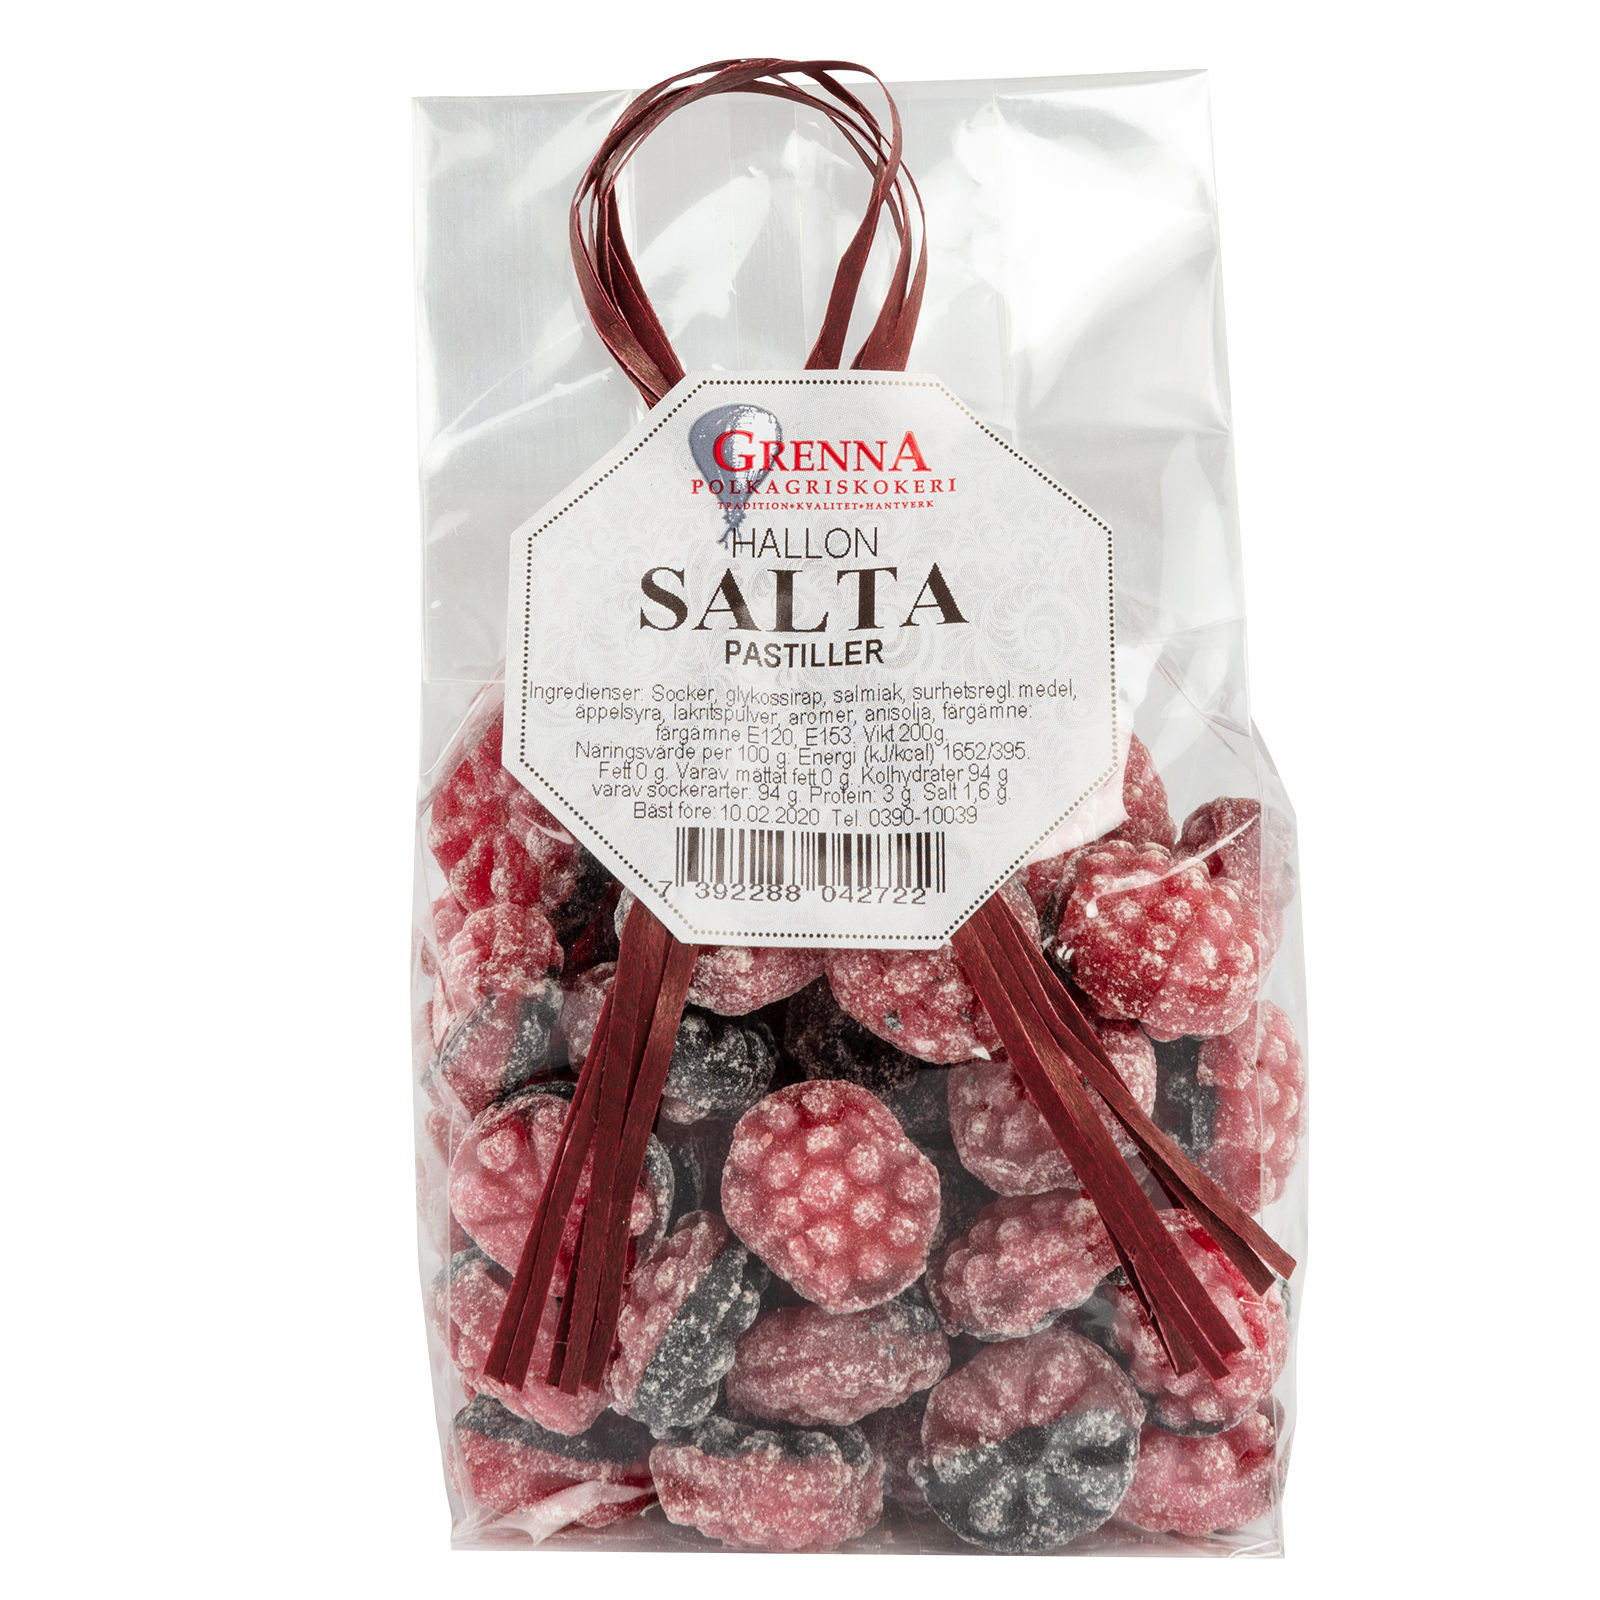 Raspberry Liquorice sweets